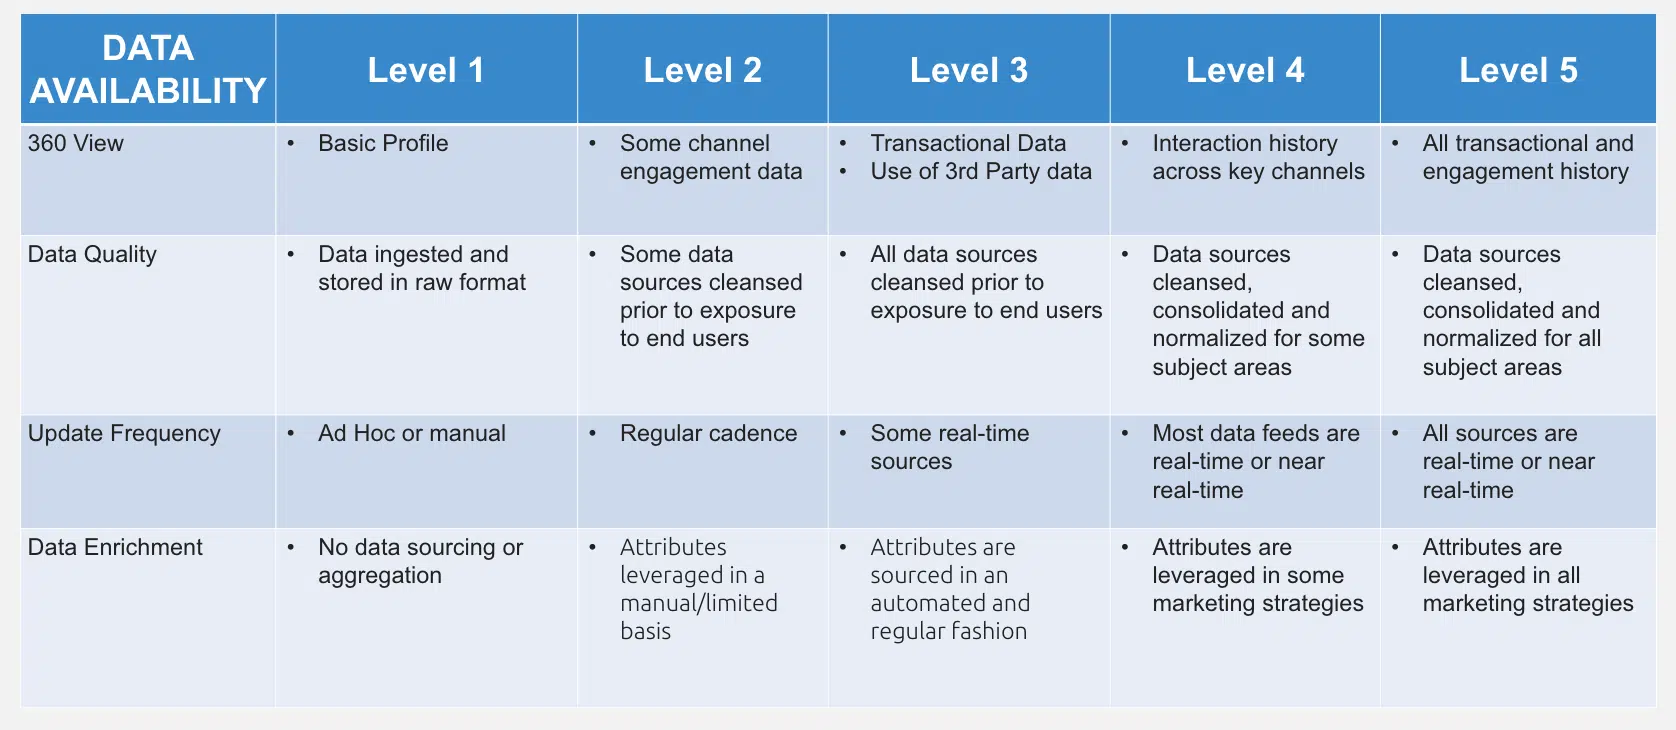 CDP - data availability